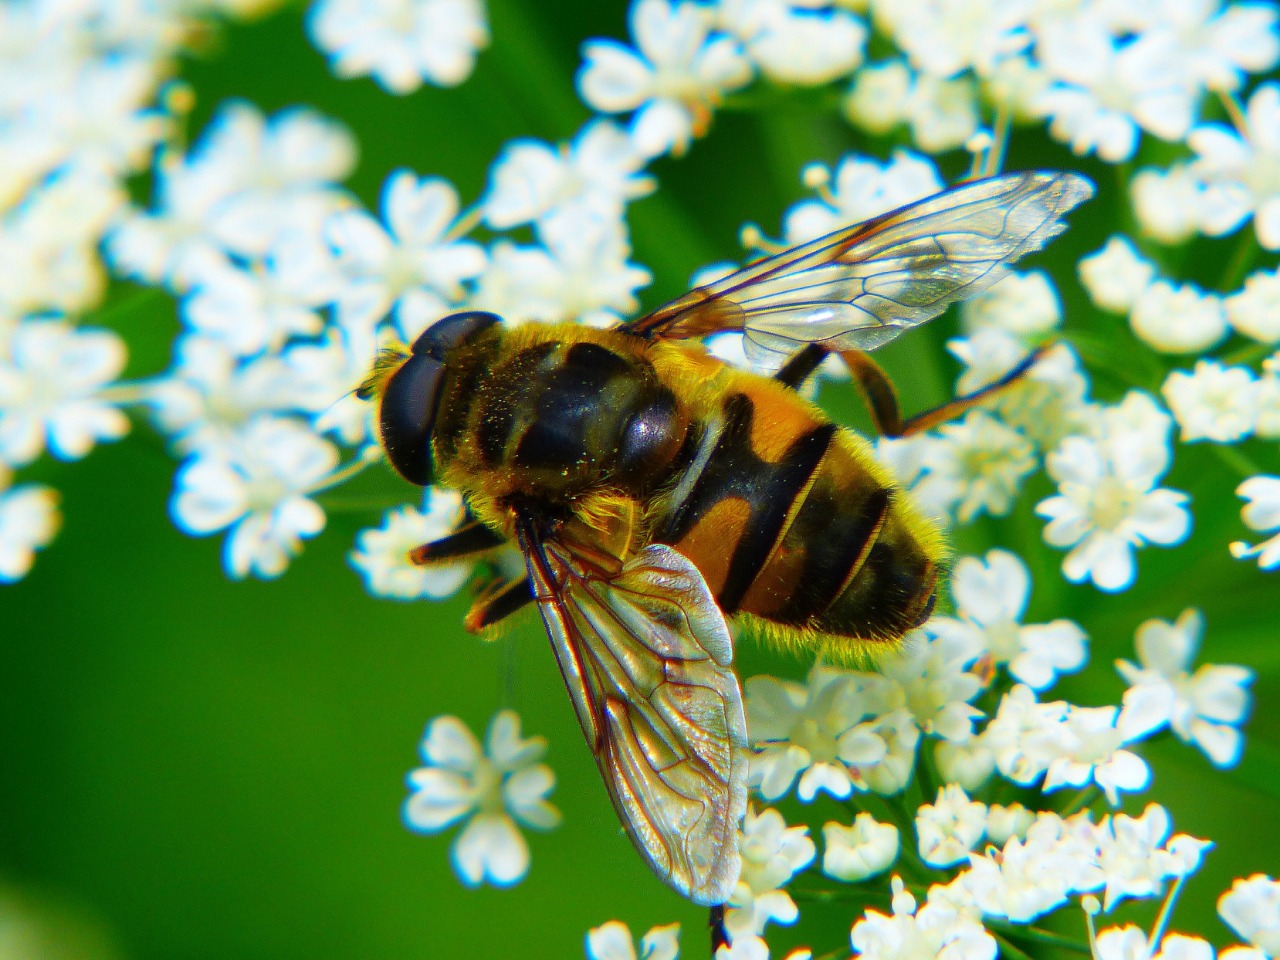 О предотвращении отравления пчел пестицидами и агрохимикатами